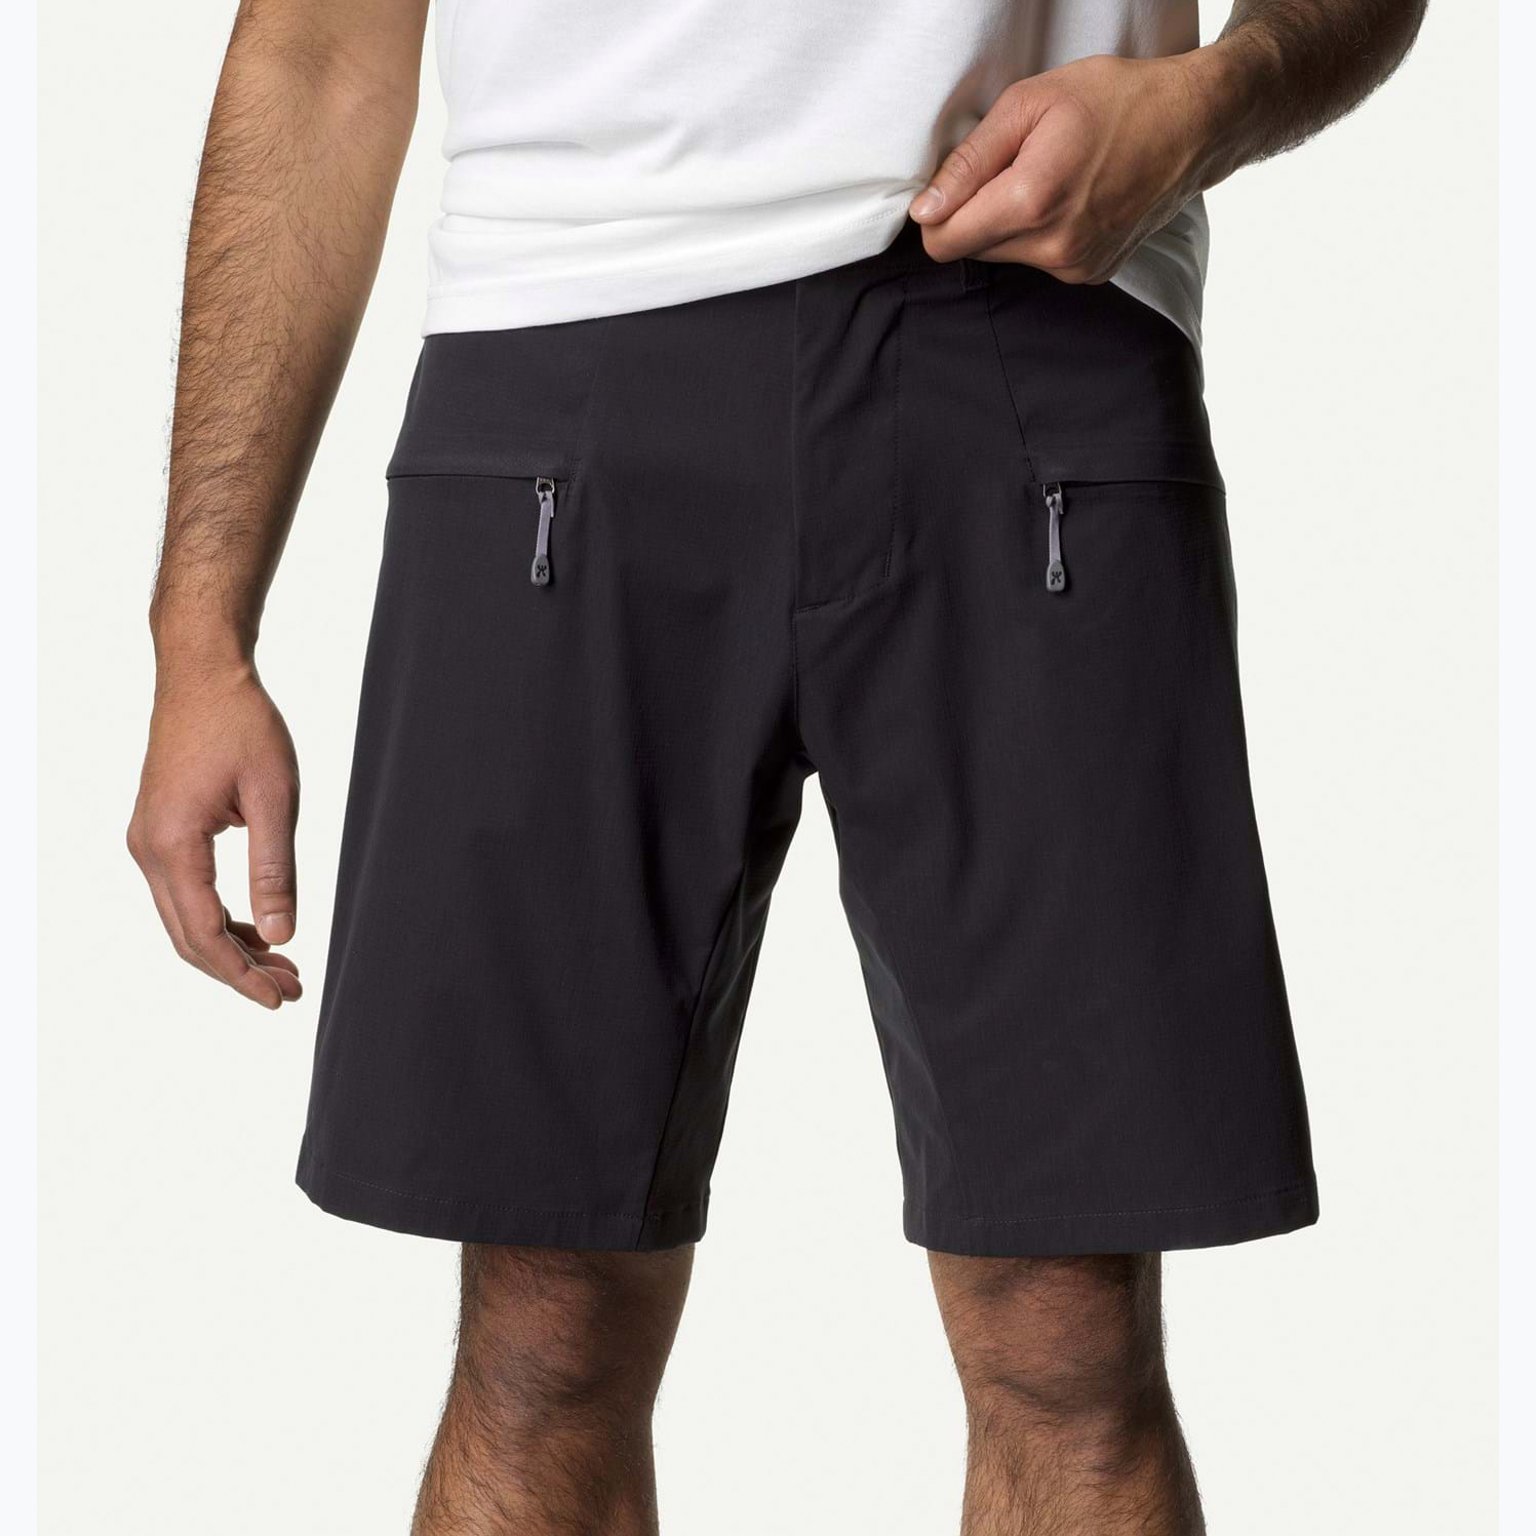 M Daybreak shorts